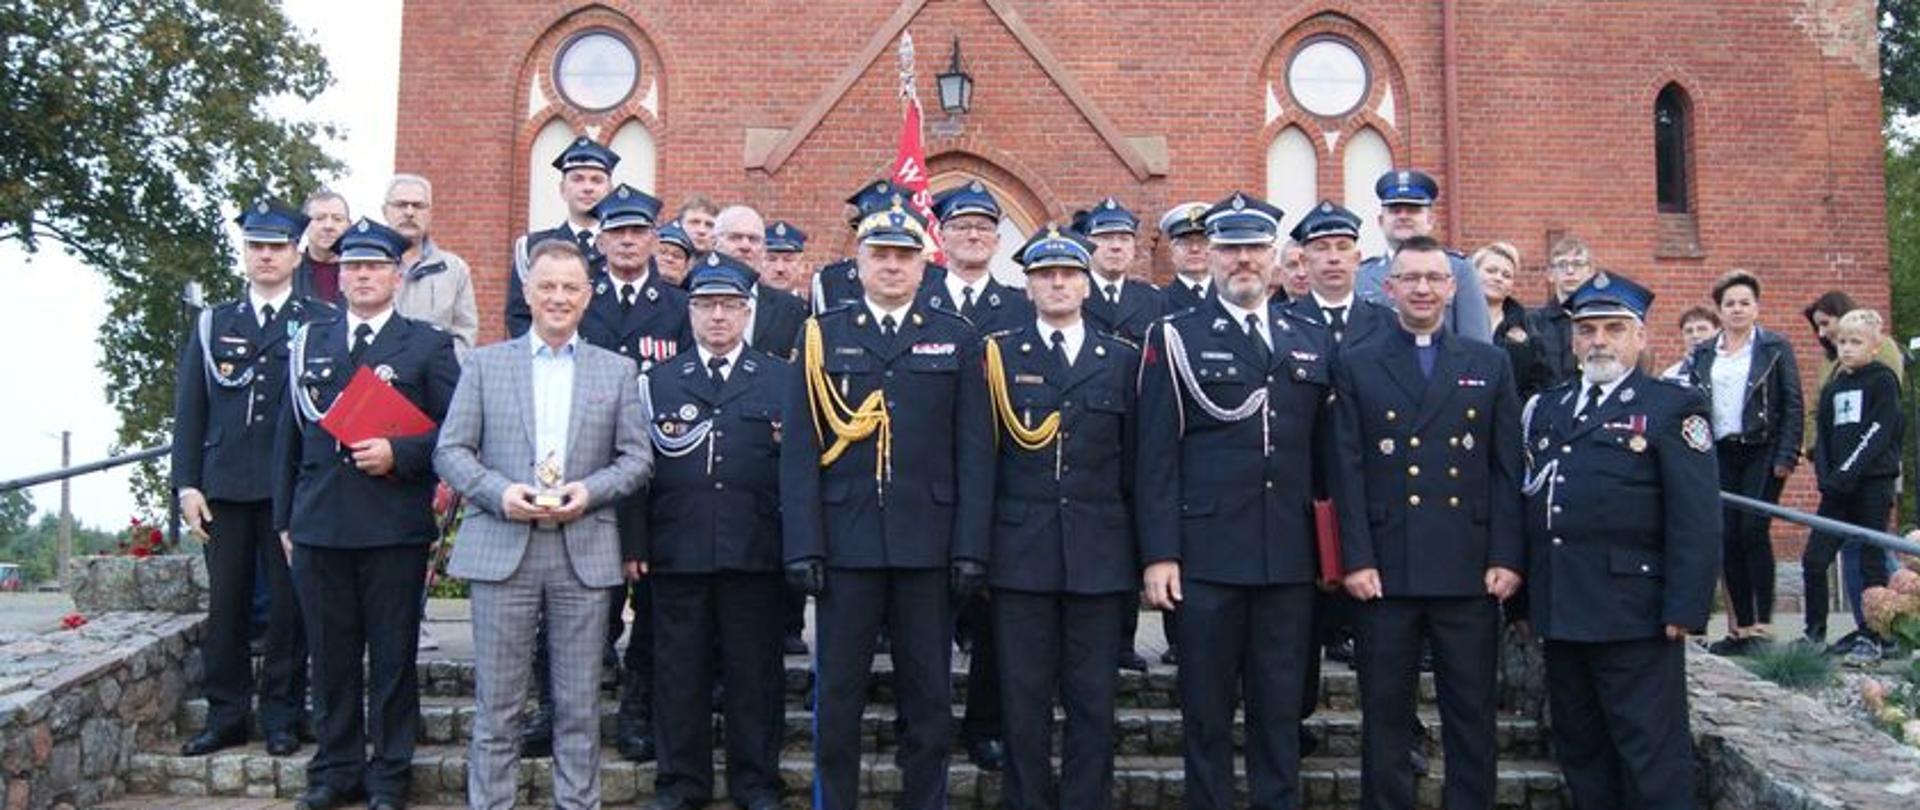 Na zdjęciu widać strażaków ubranych w mundury wyjściowe na tle kościoła w Leśniewie